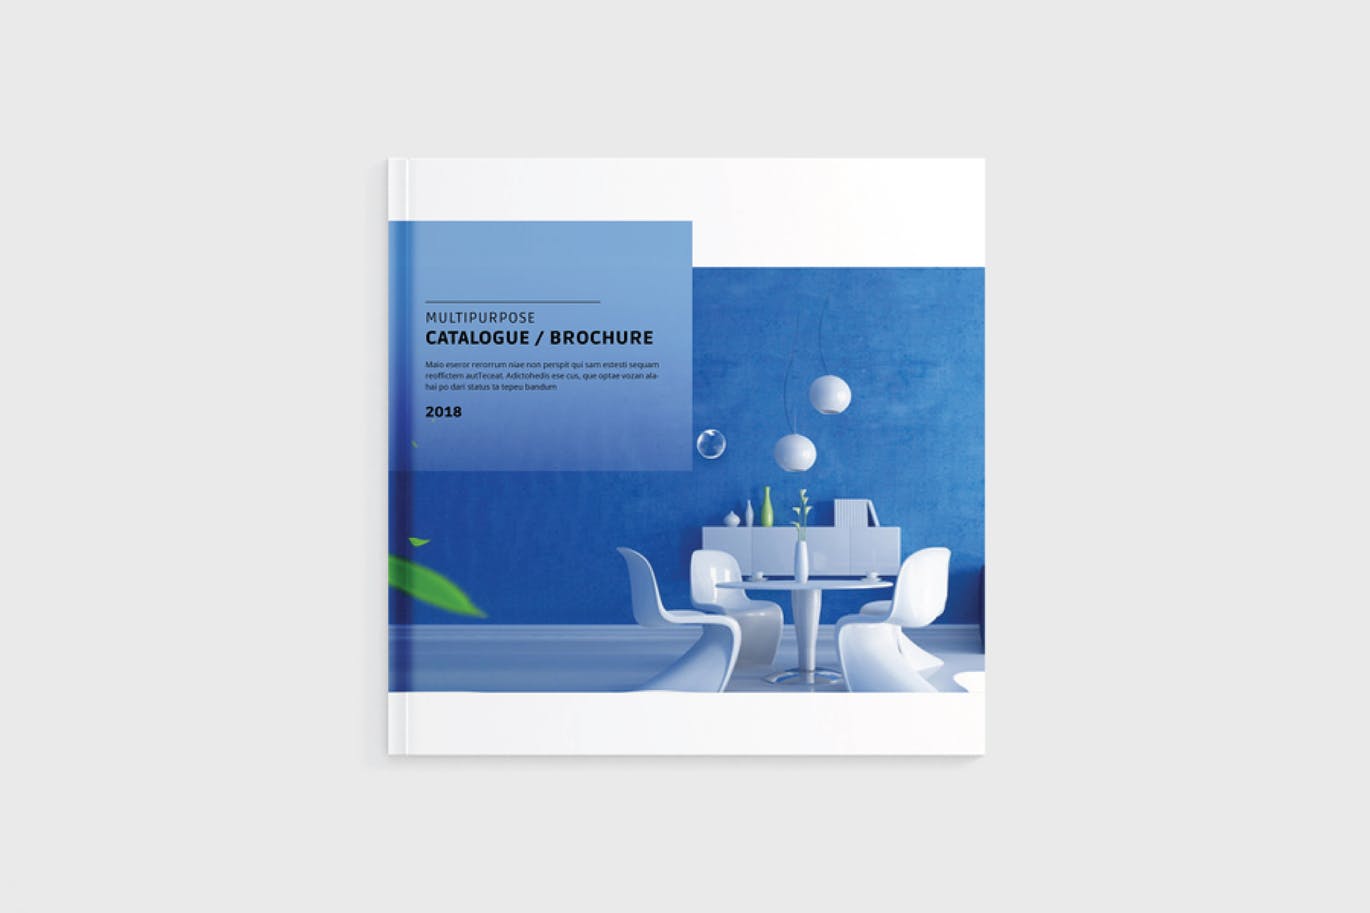 多用途企业产品手册/企业画册设计模板 Multipurpose Catalogue / Brochure插图